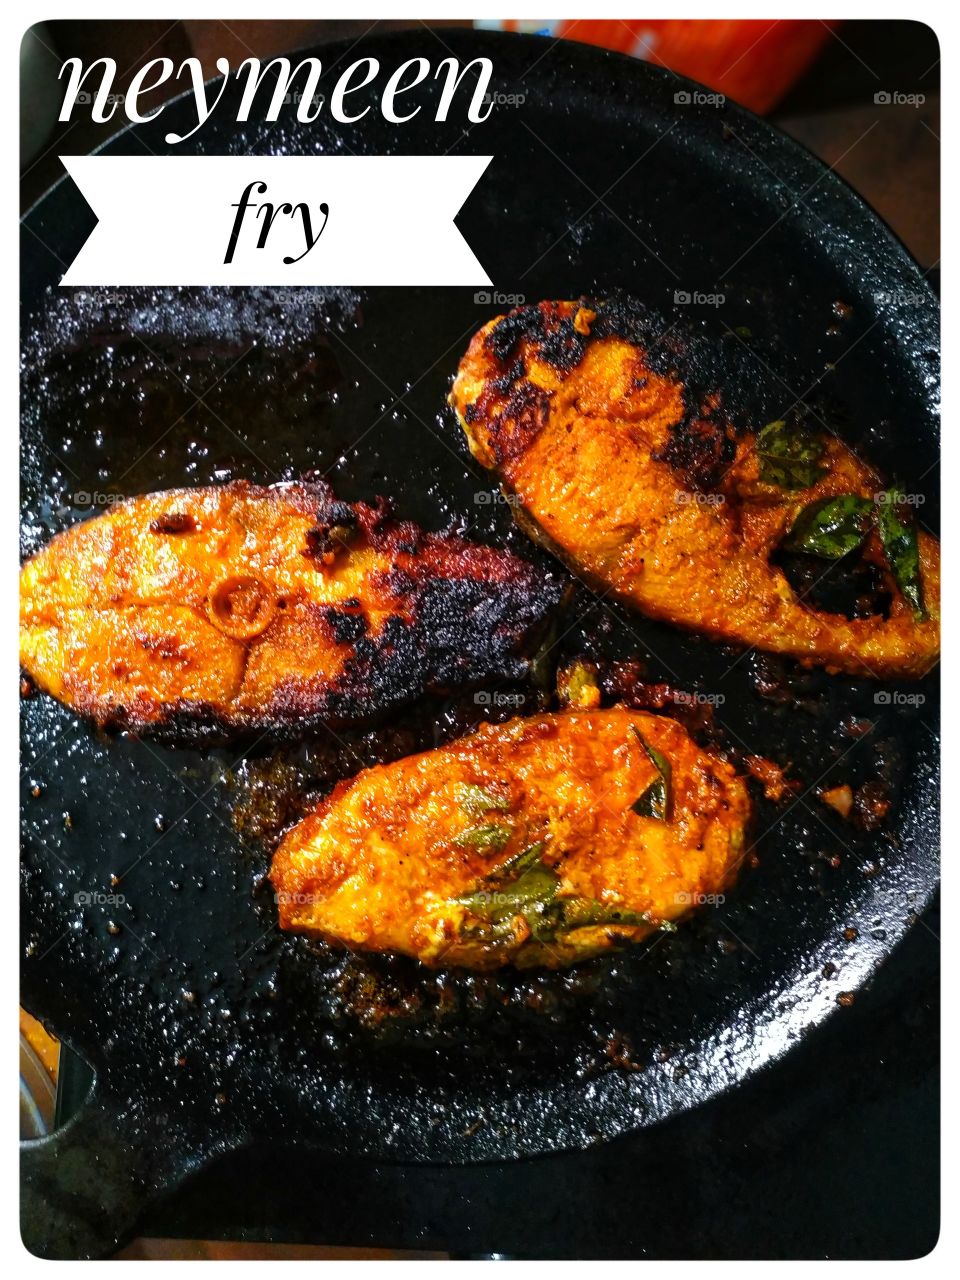 Kerala fish fry